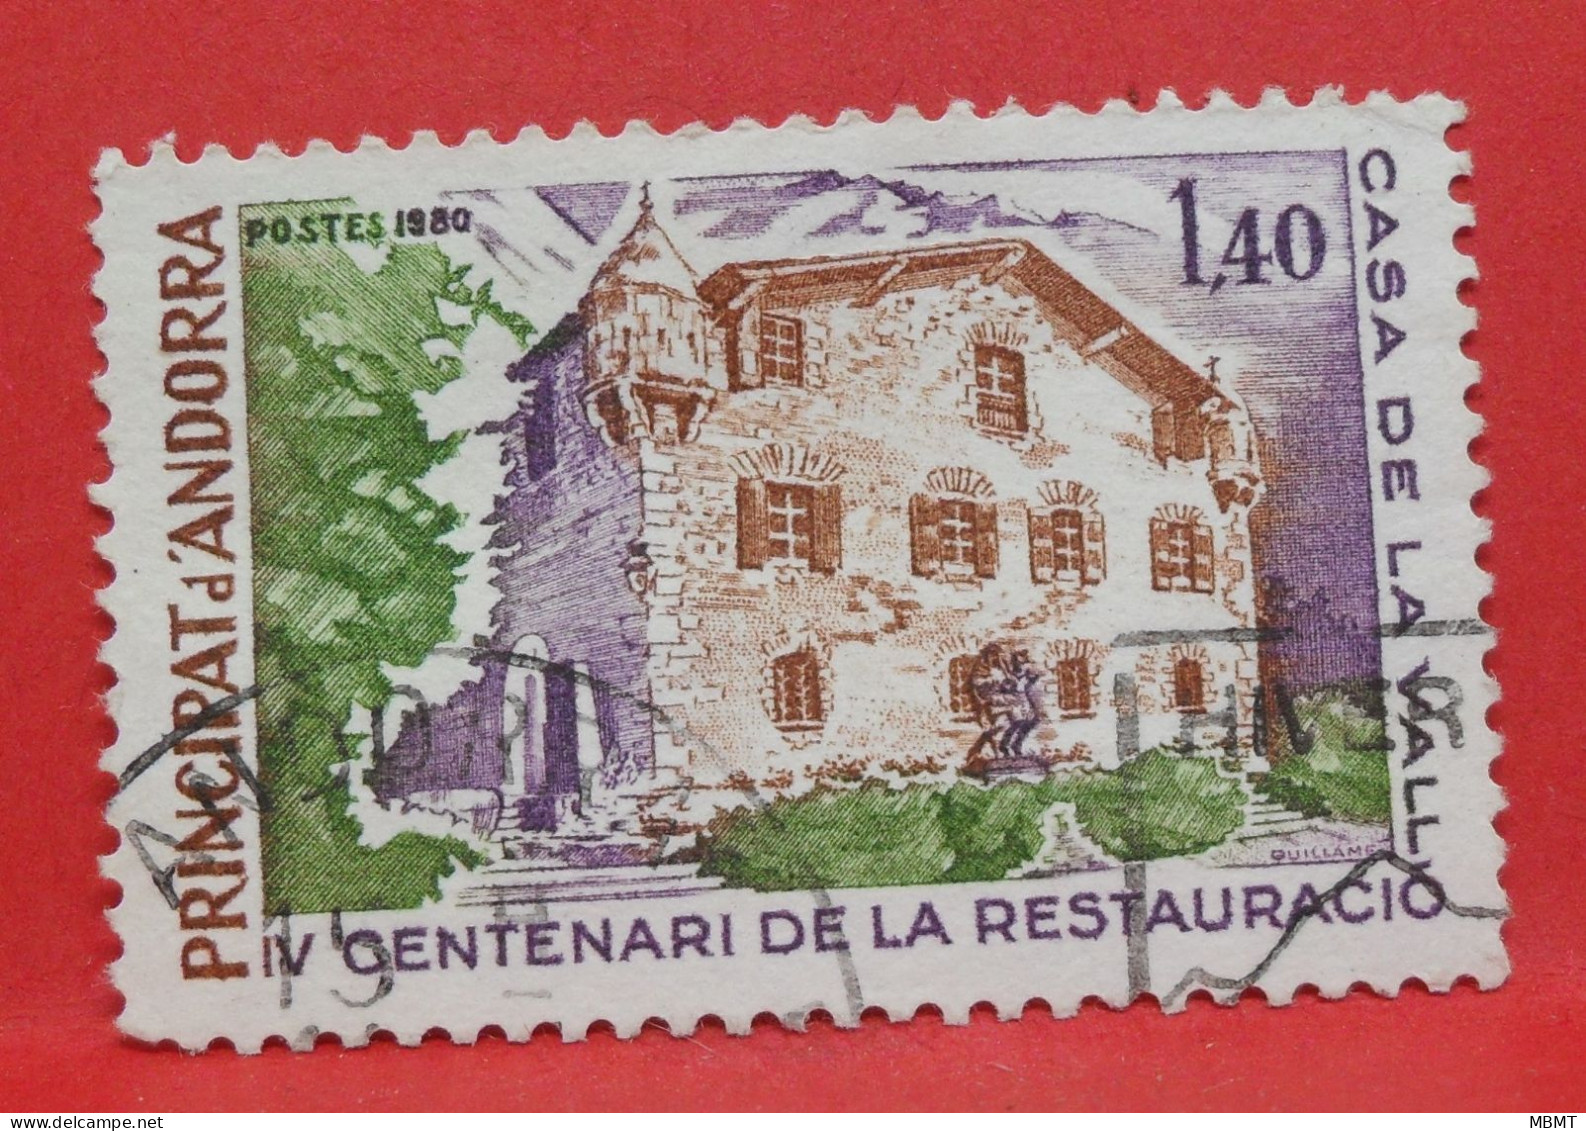 N°310 - 1.10 Franc - Année 1980 - Timbre Oblitéré Andorre Français - - Used Stamps